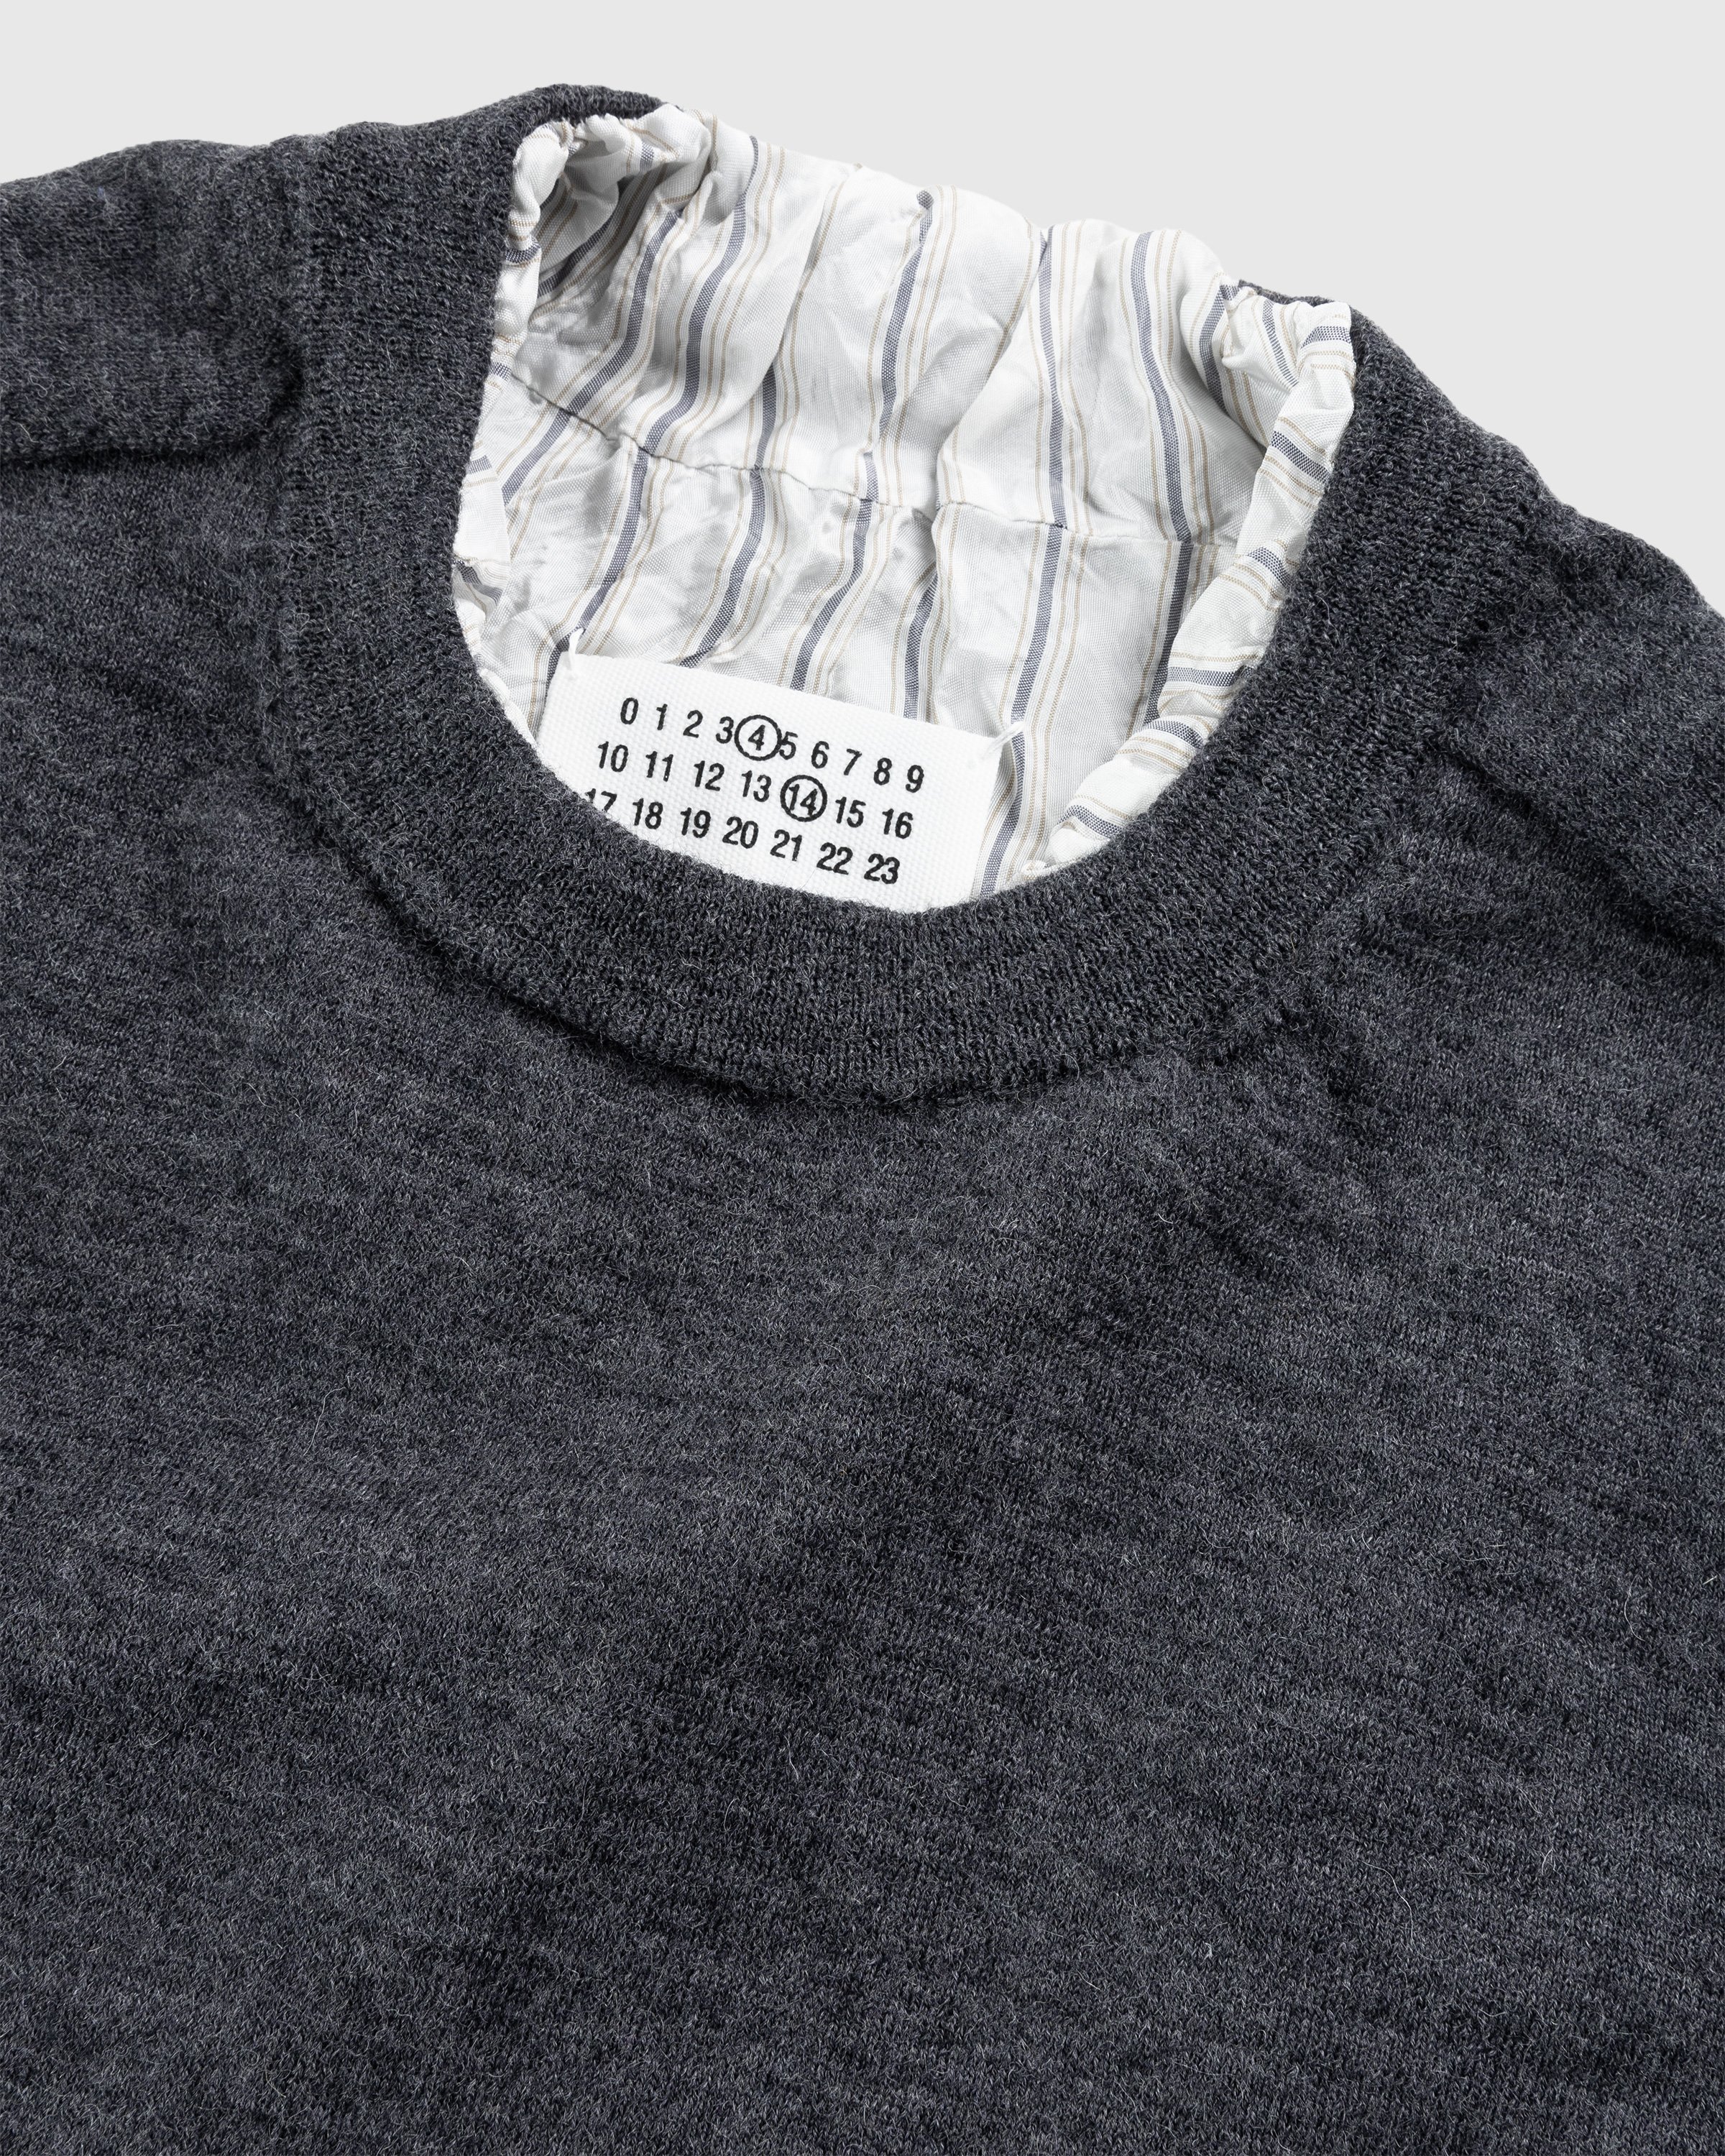 Maison Margiela - Distressed Crewneck Sweater Dark Grey - Clothing - Grey - Image 5